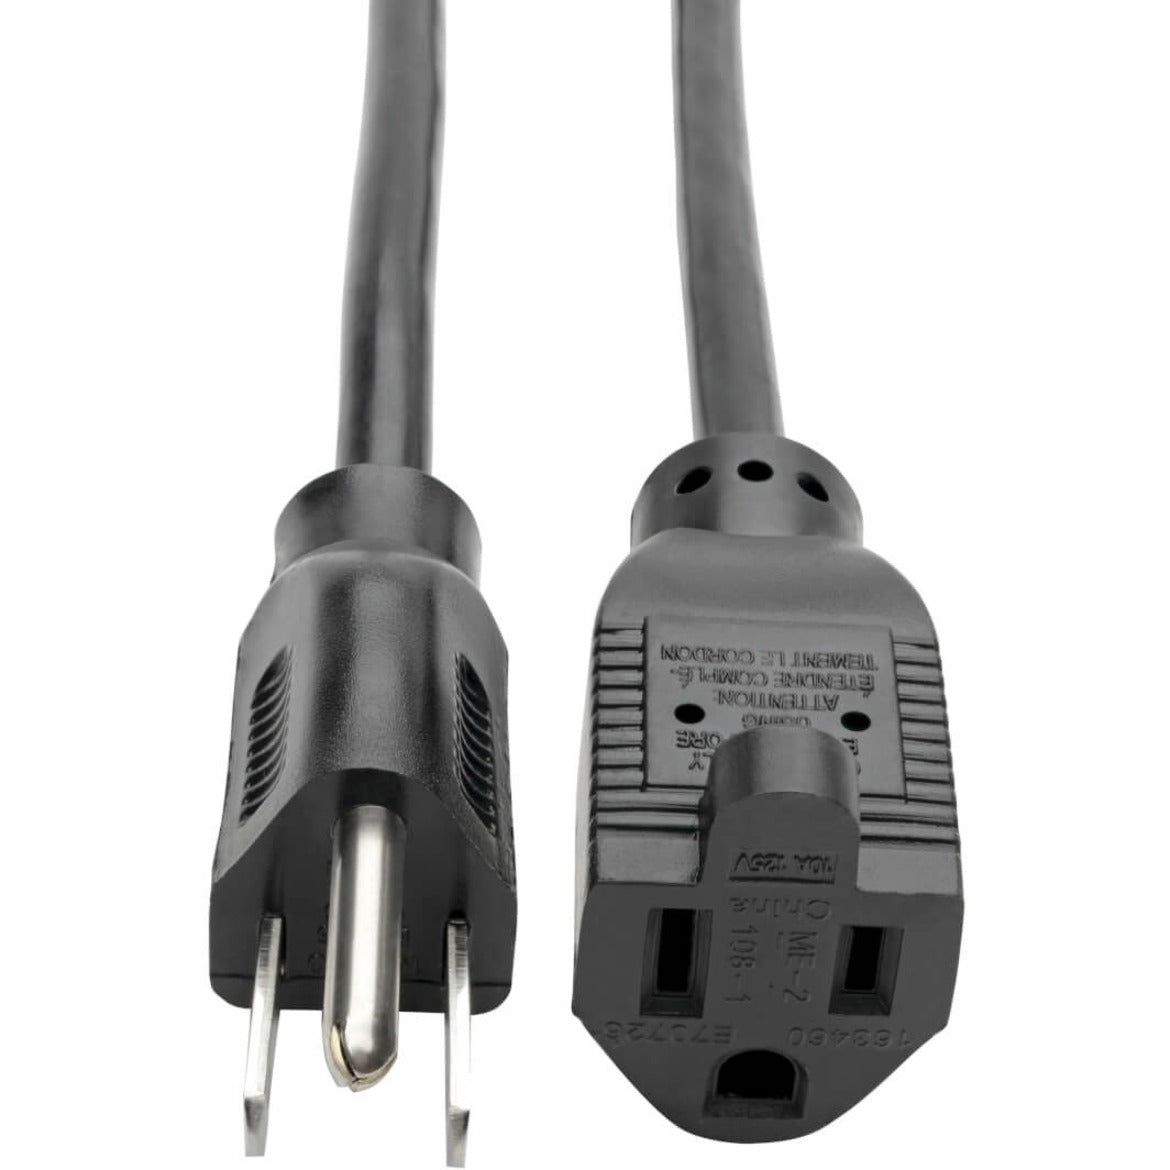 Tripp Lite P022-015 Power Extension Cord, 15 ft, 10A, 120V AC, NEMA 5-15P to NEMA 5-15R, Black [Discontinued]